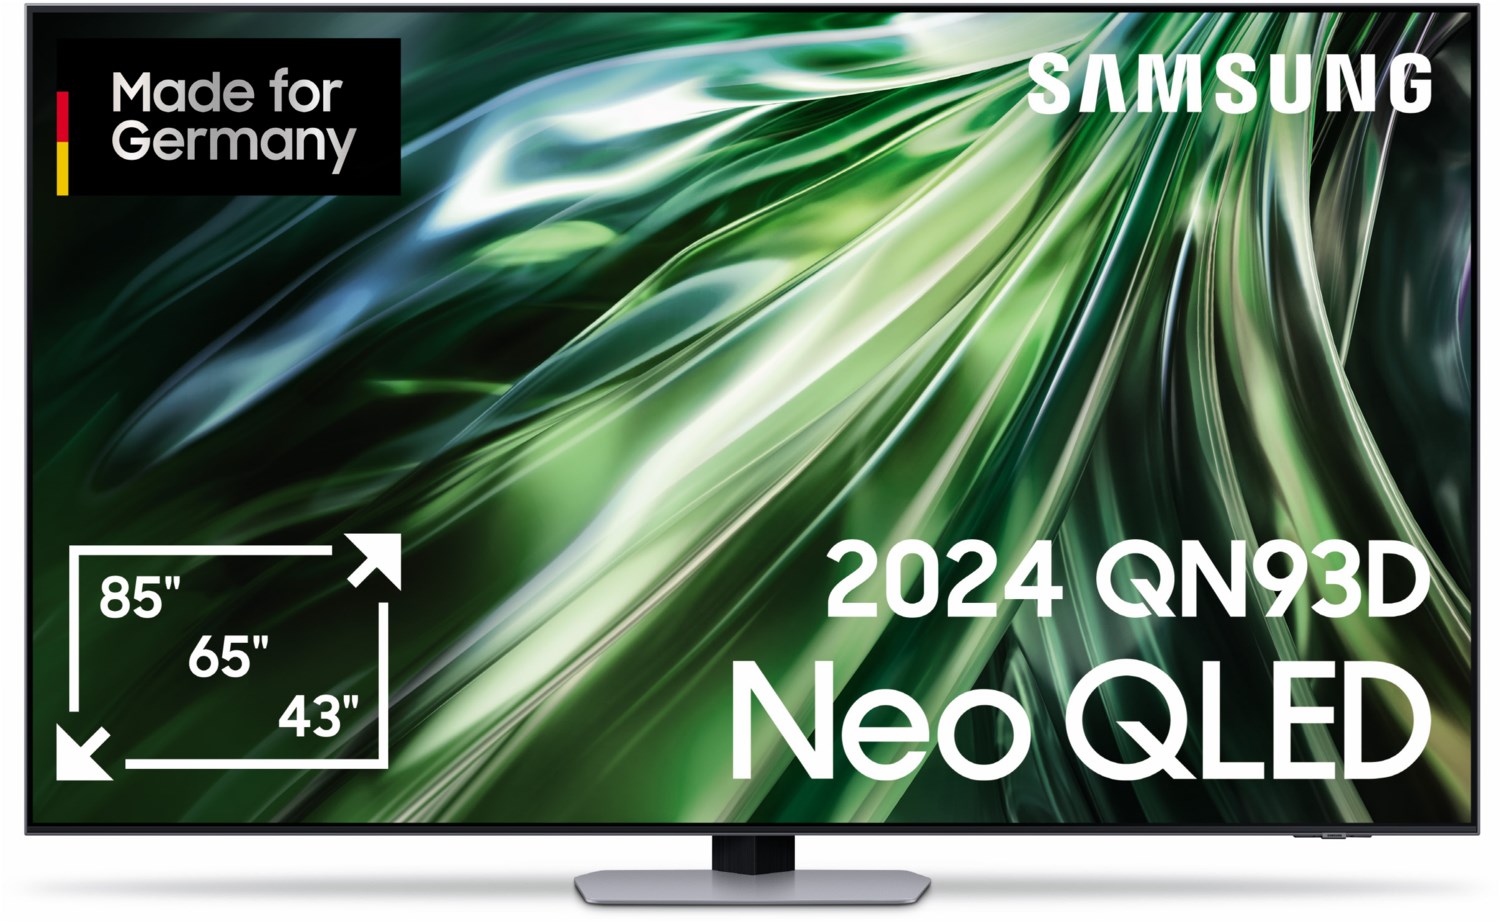 Samsung Neo QLED-TV 65 Zoll (164 cm) QN93D Modell 2024 carbon silber von Samsung